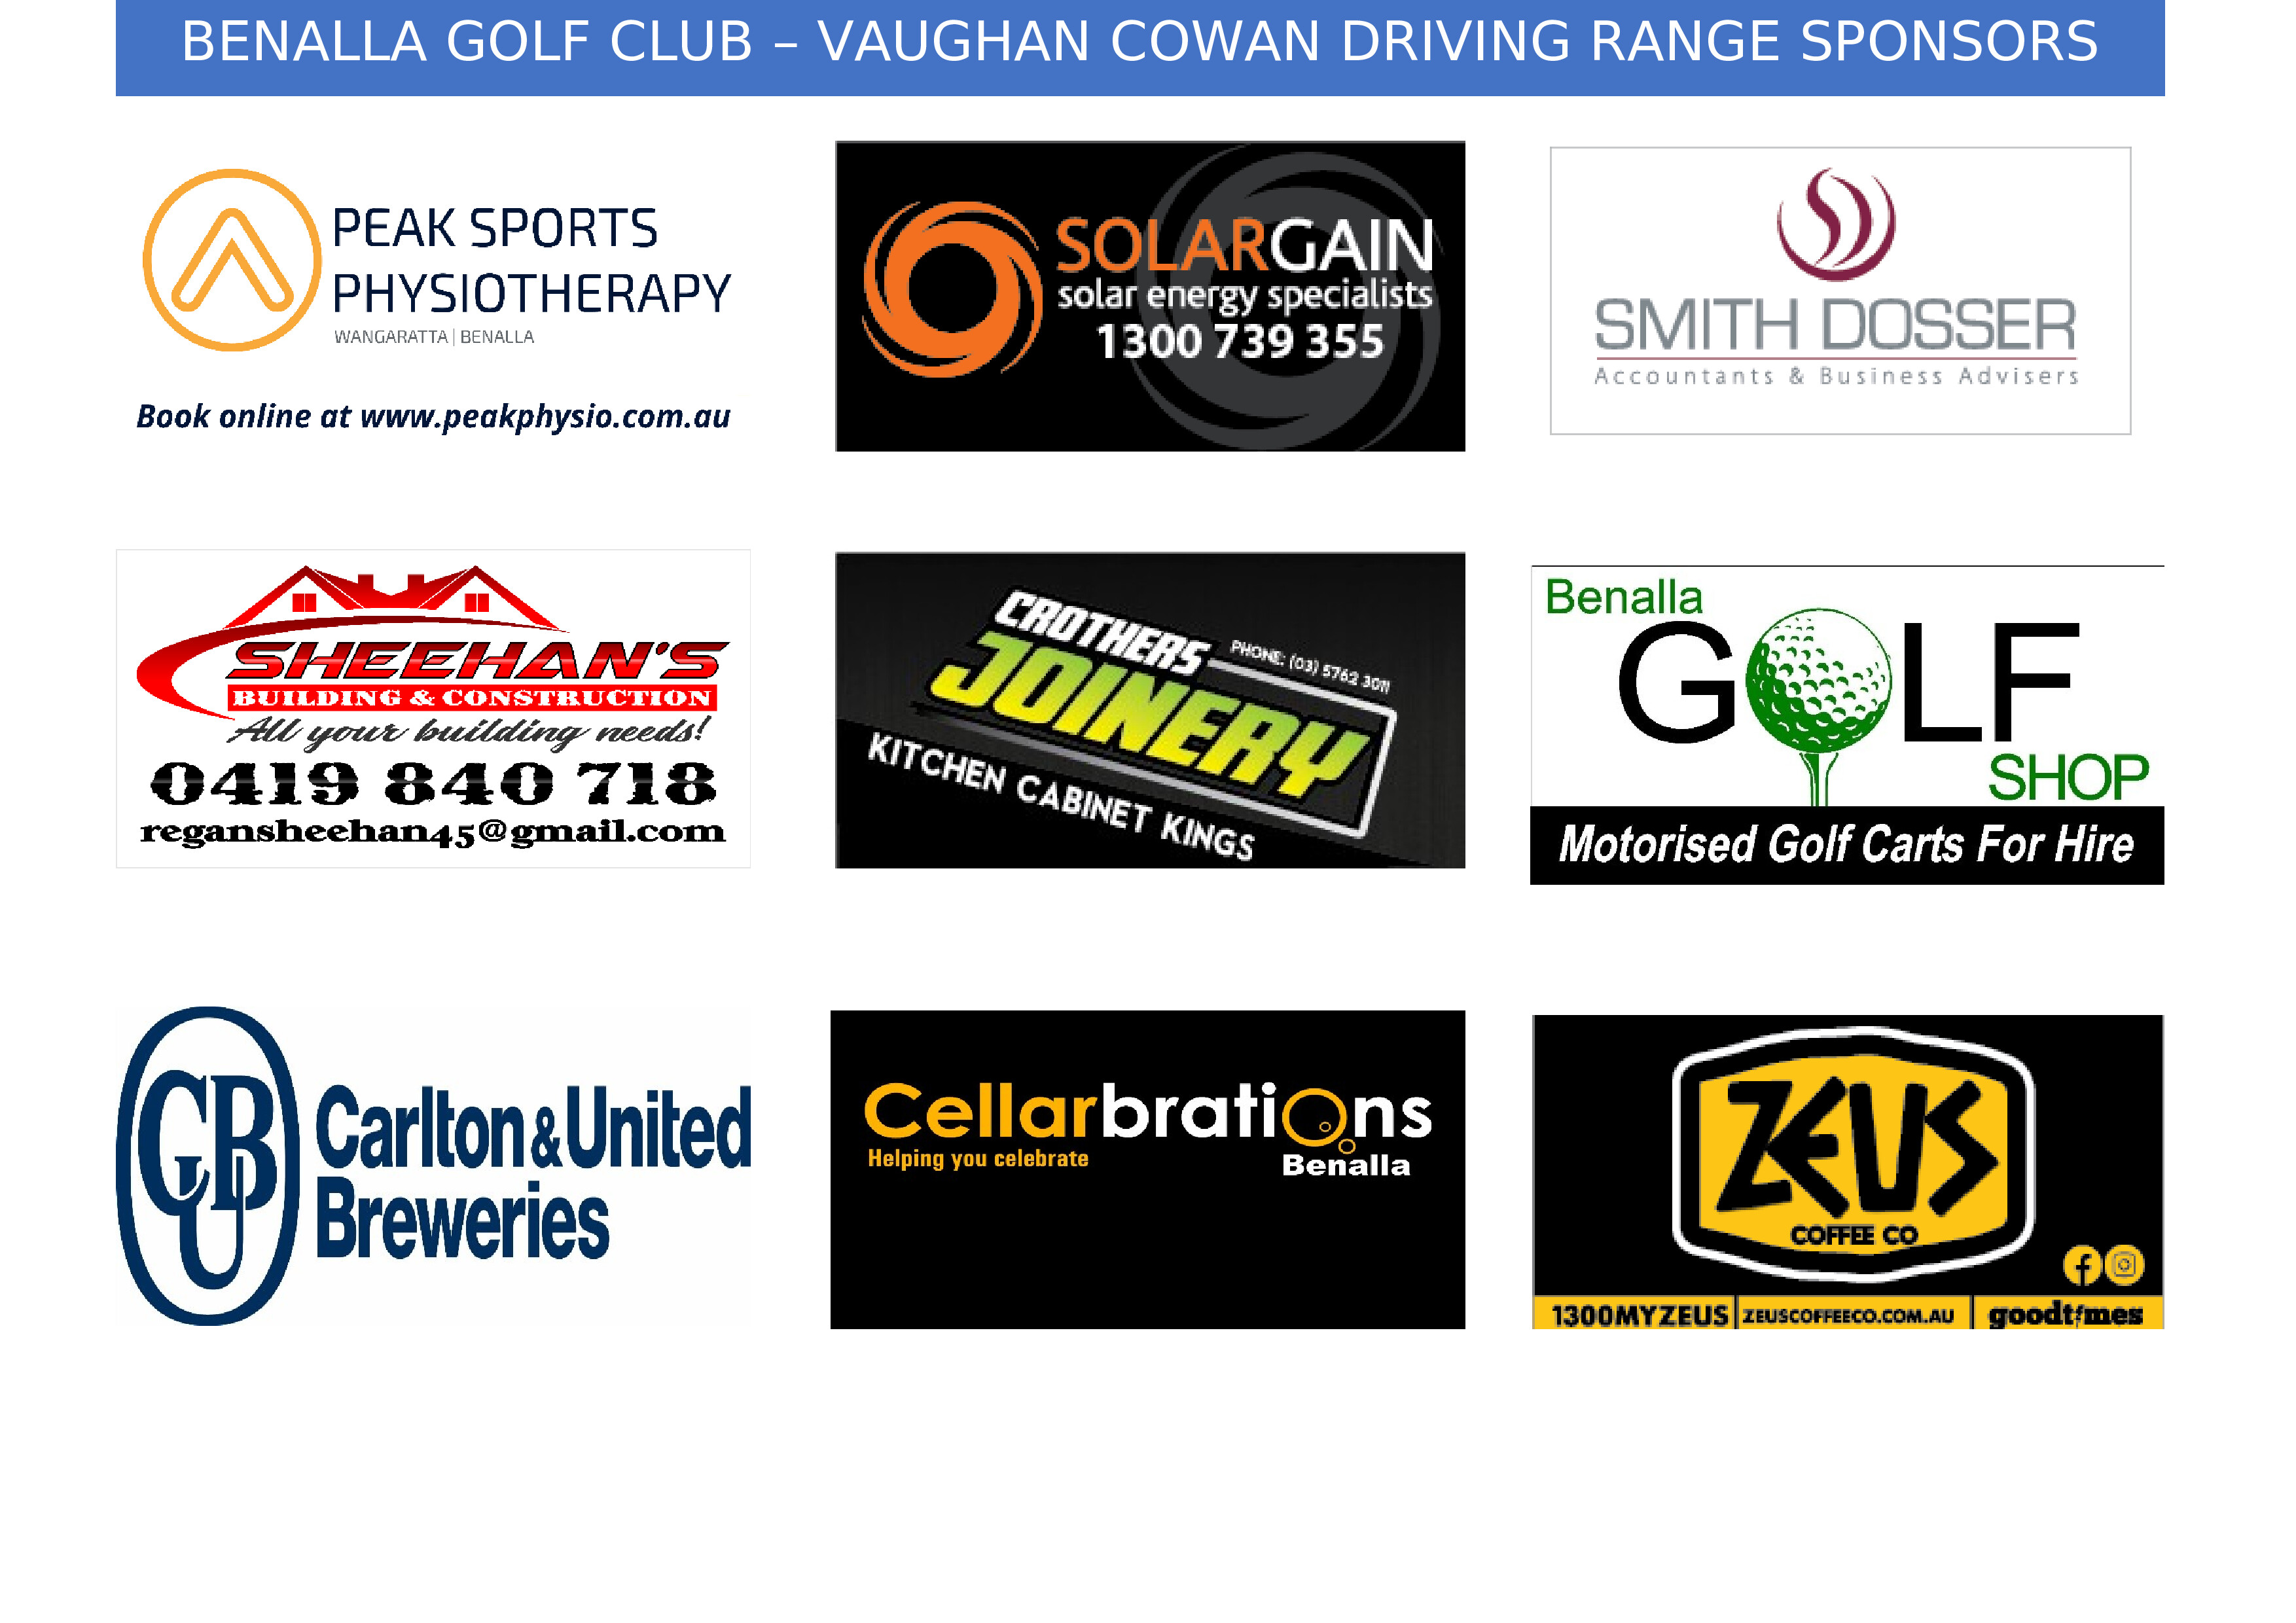 Website Driving Range Sponsors22